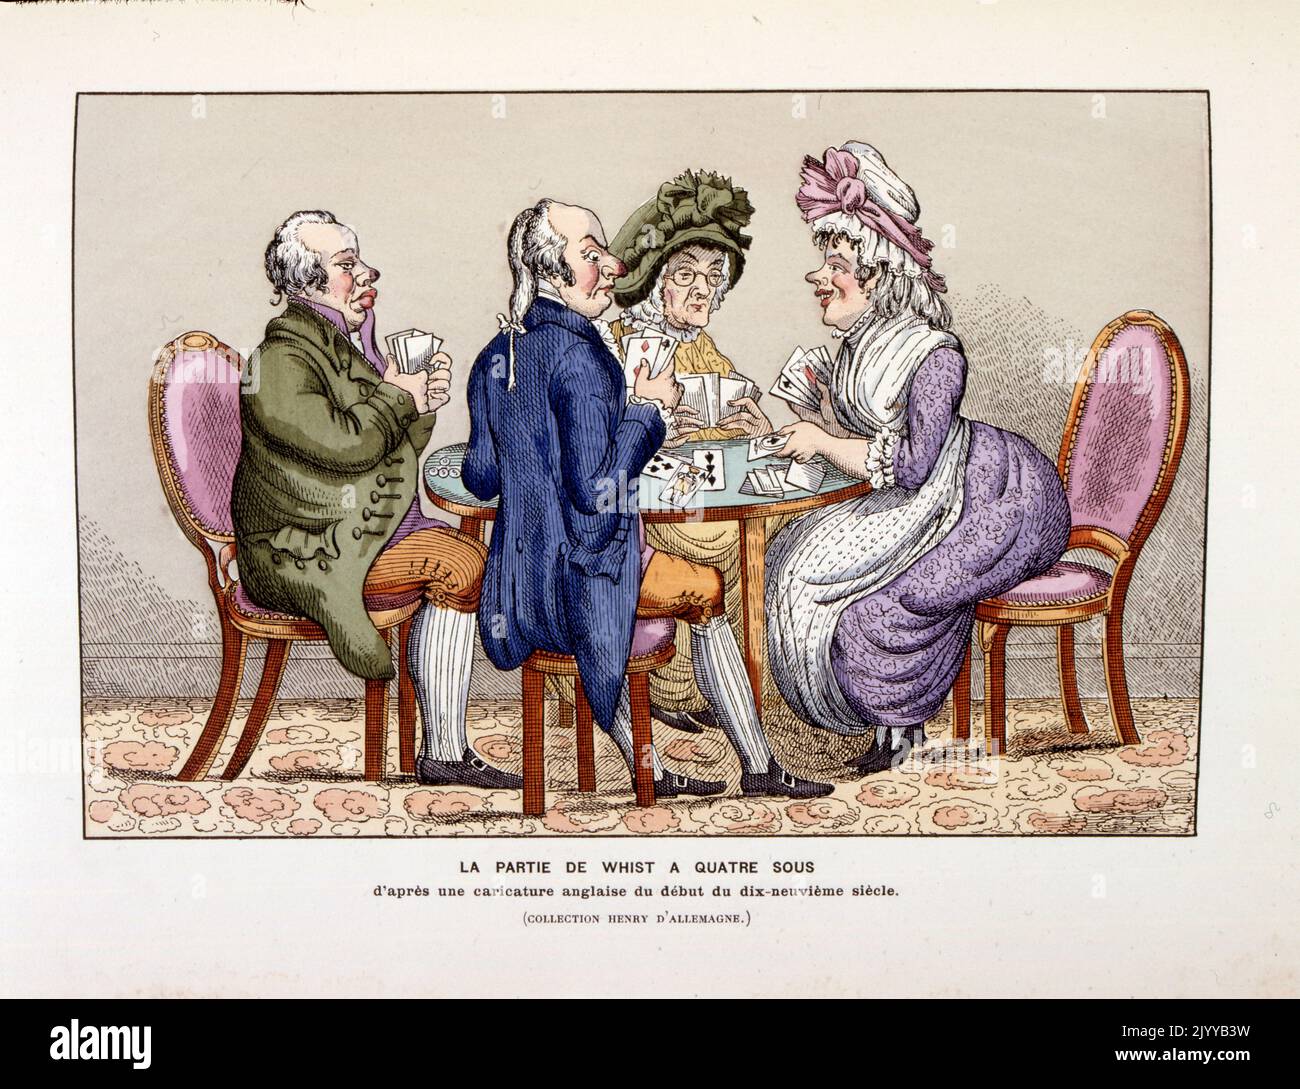 Farbige Abbildung von Spielkarten, die vier Personen darstellen, die das Kartenspiel Whist spielen, ein beliebtes Spiel aus dem 19.. Jahrhundert. Stockfoto